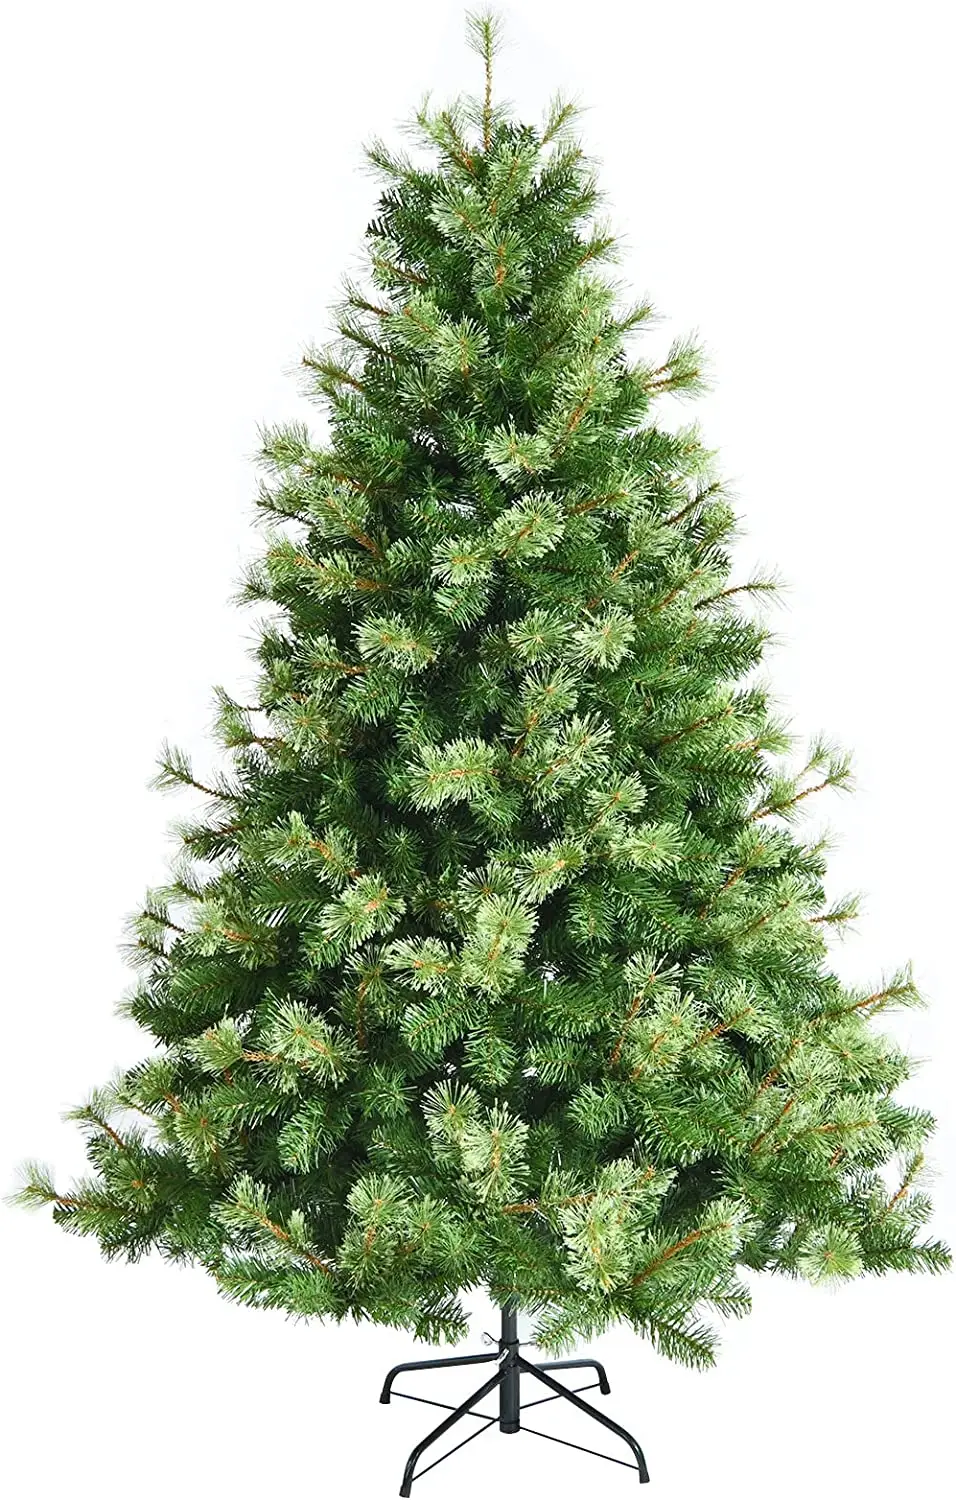 Weihnachtsbaum 180cm K眉nstlicher